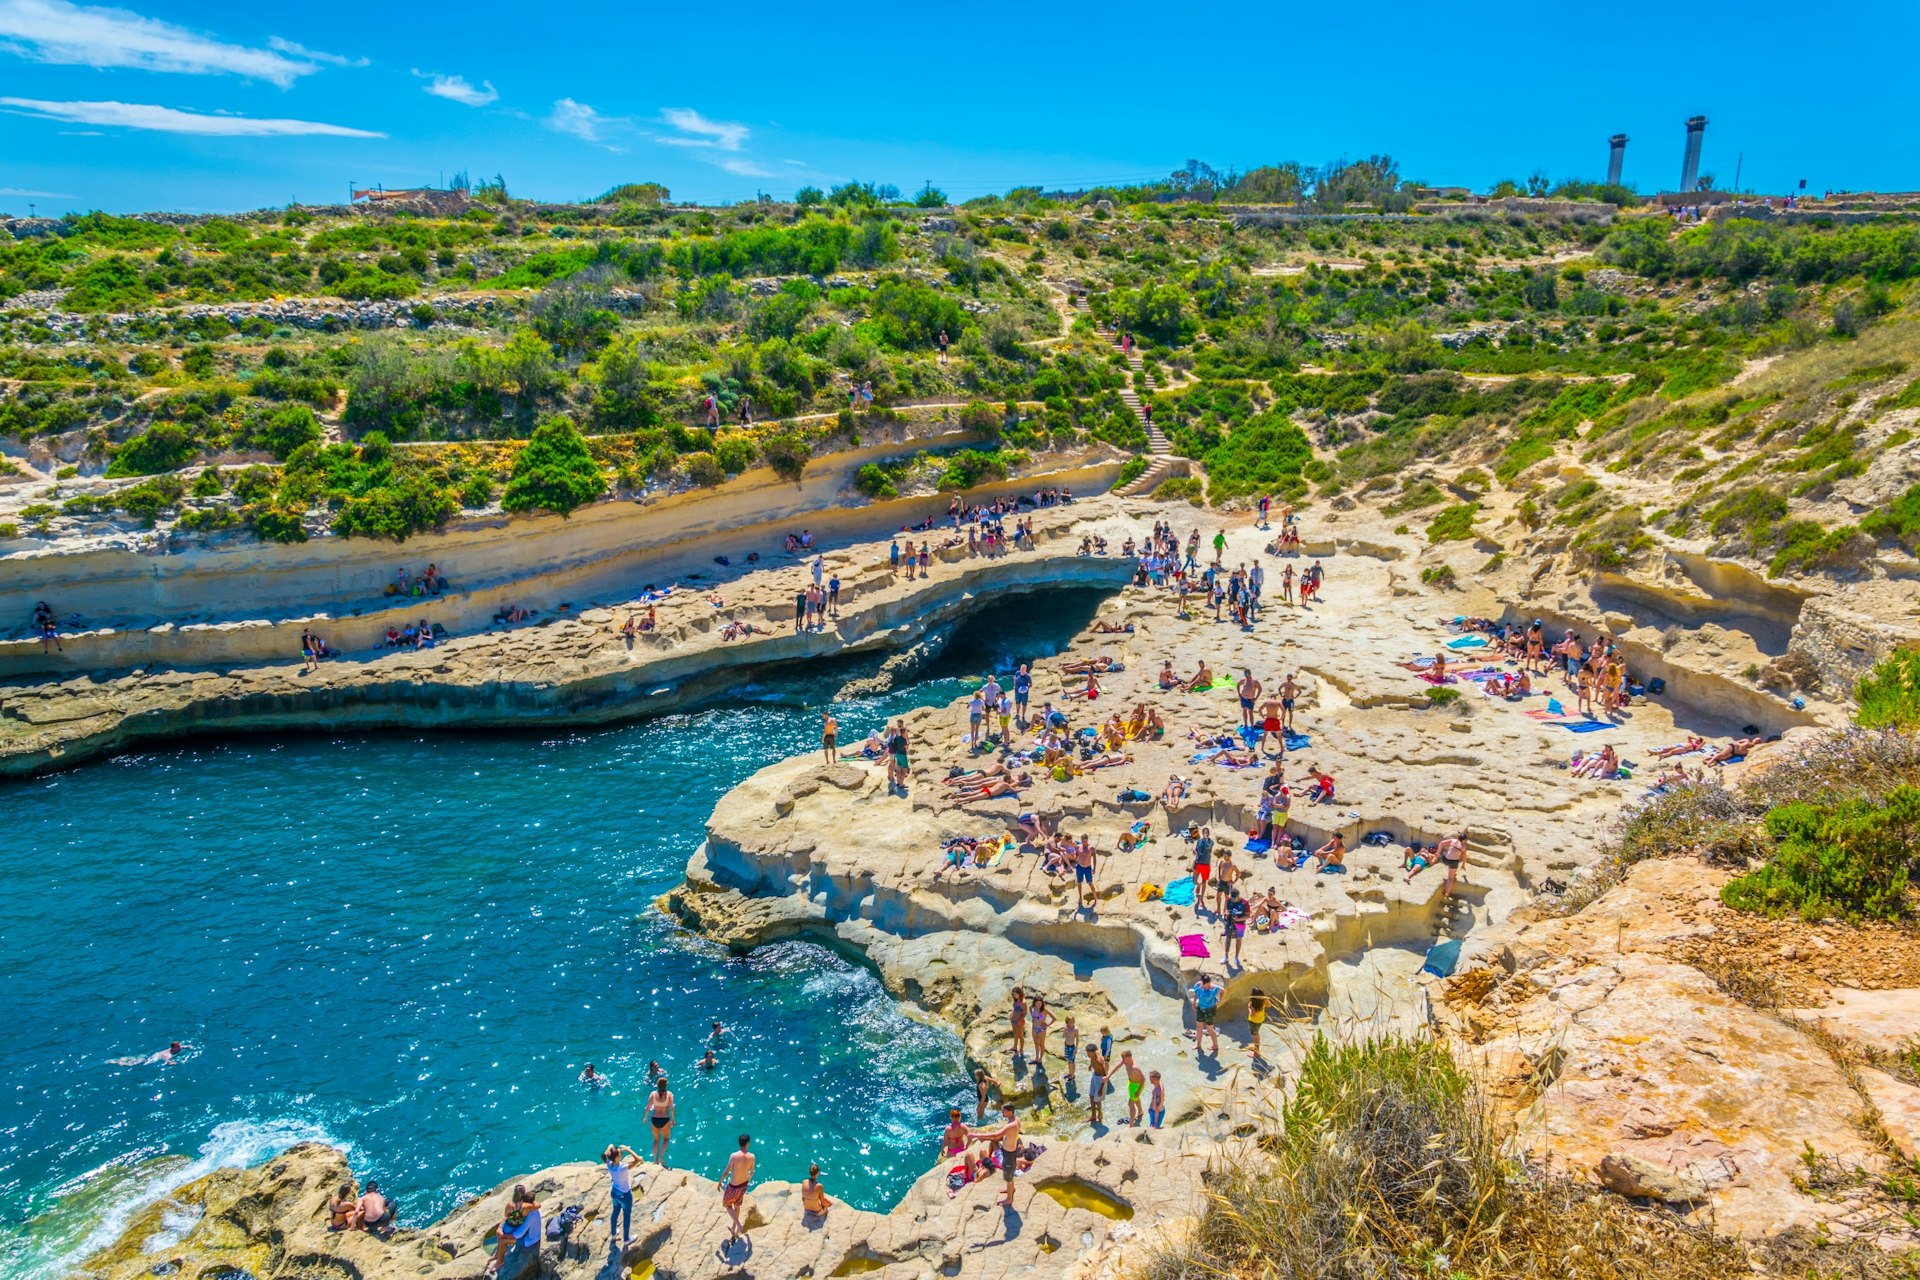 People are enjoying sunny day at Saint Peter's pool near Marsaxlokk, Malta 